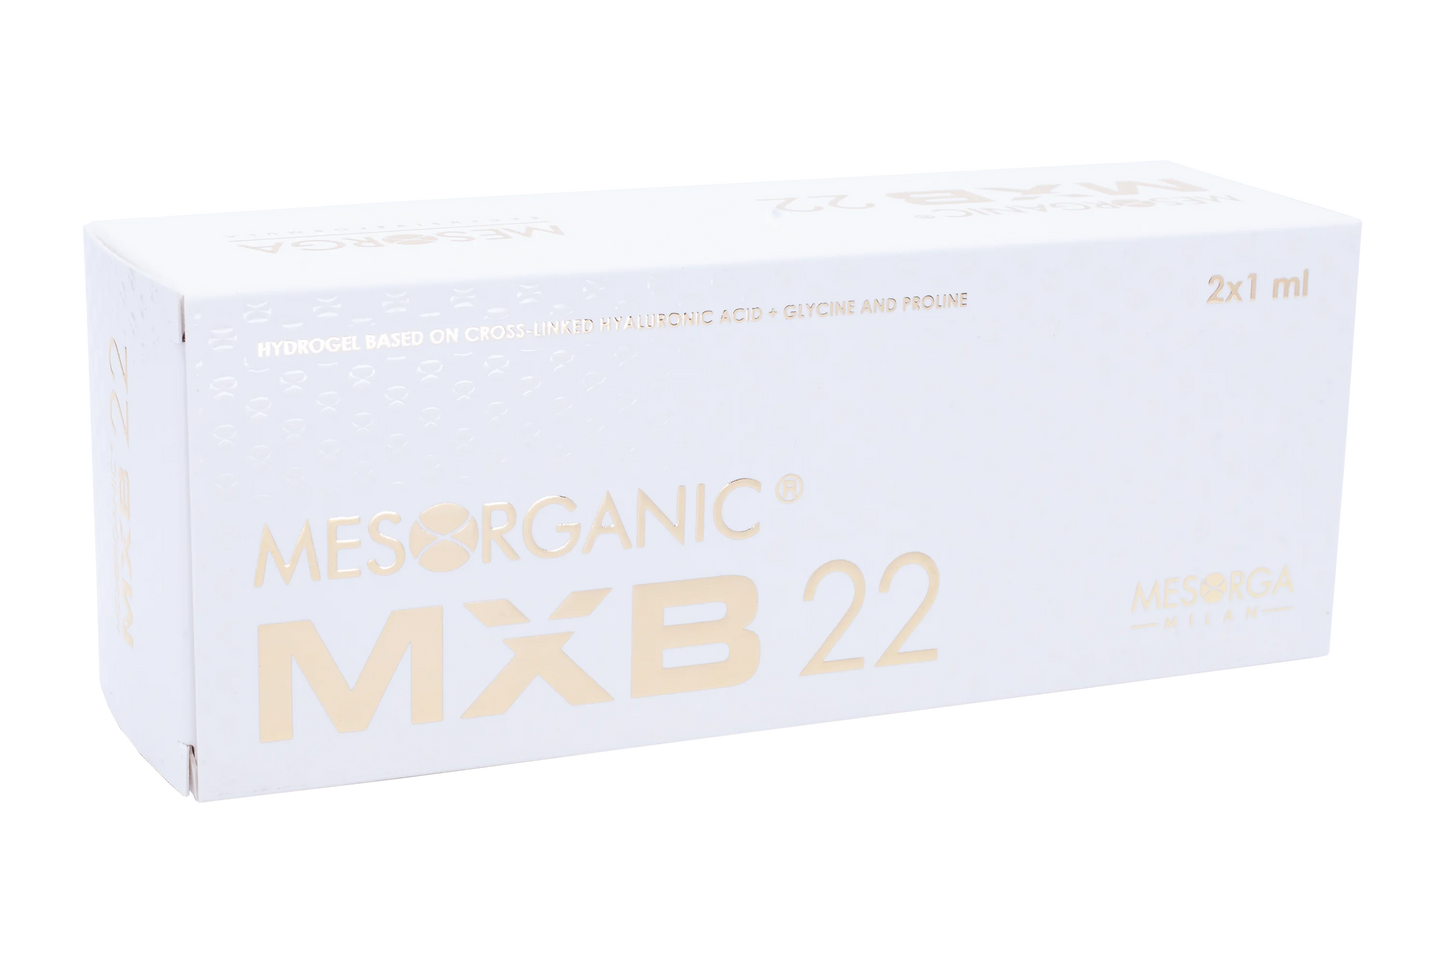 Mesorganic® MXB 22